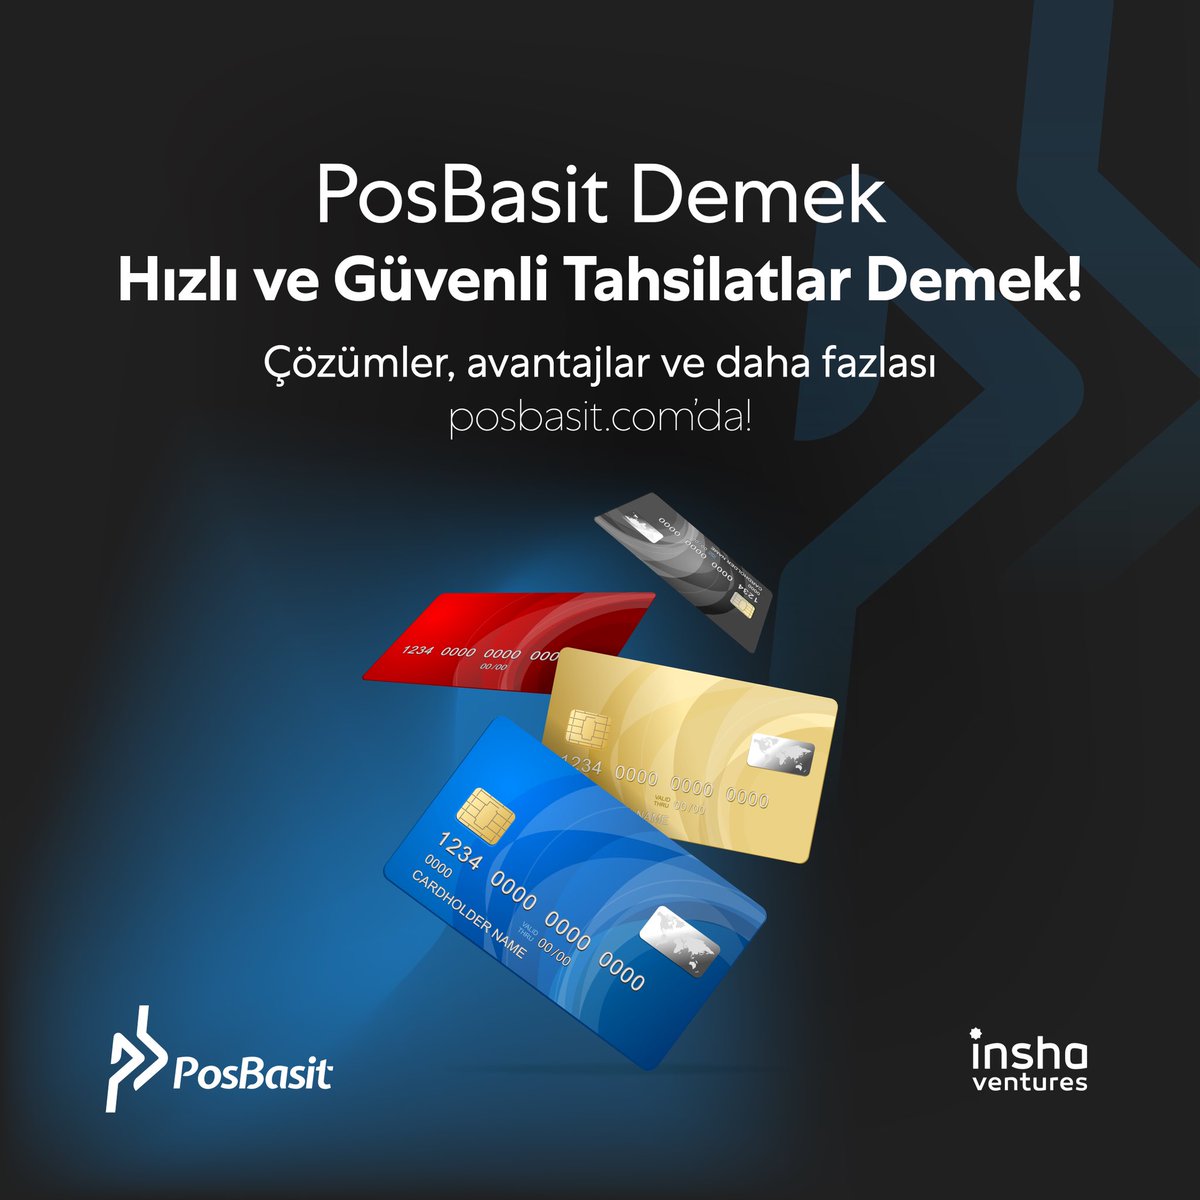 PosBasit demek uygun komisyon oranlarıyla hızlı ve güvenli online tahsilat yapmak demek. Siz de PosBasit ile masrafsız çözümlere erişmek için web sitemizi ziyaret edebilirsiniz.

#PosBasit #onlinealışveriş #SanalPos